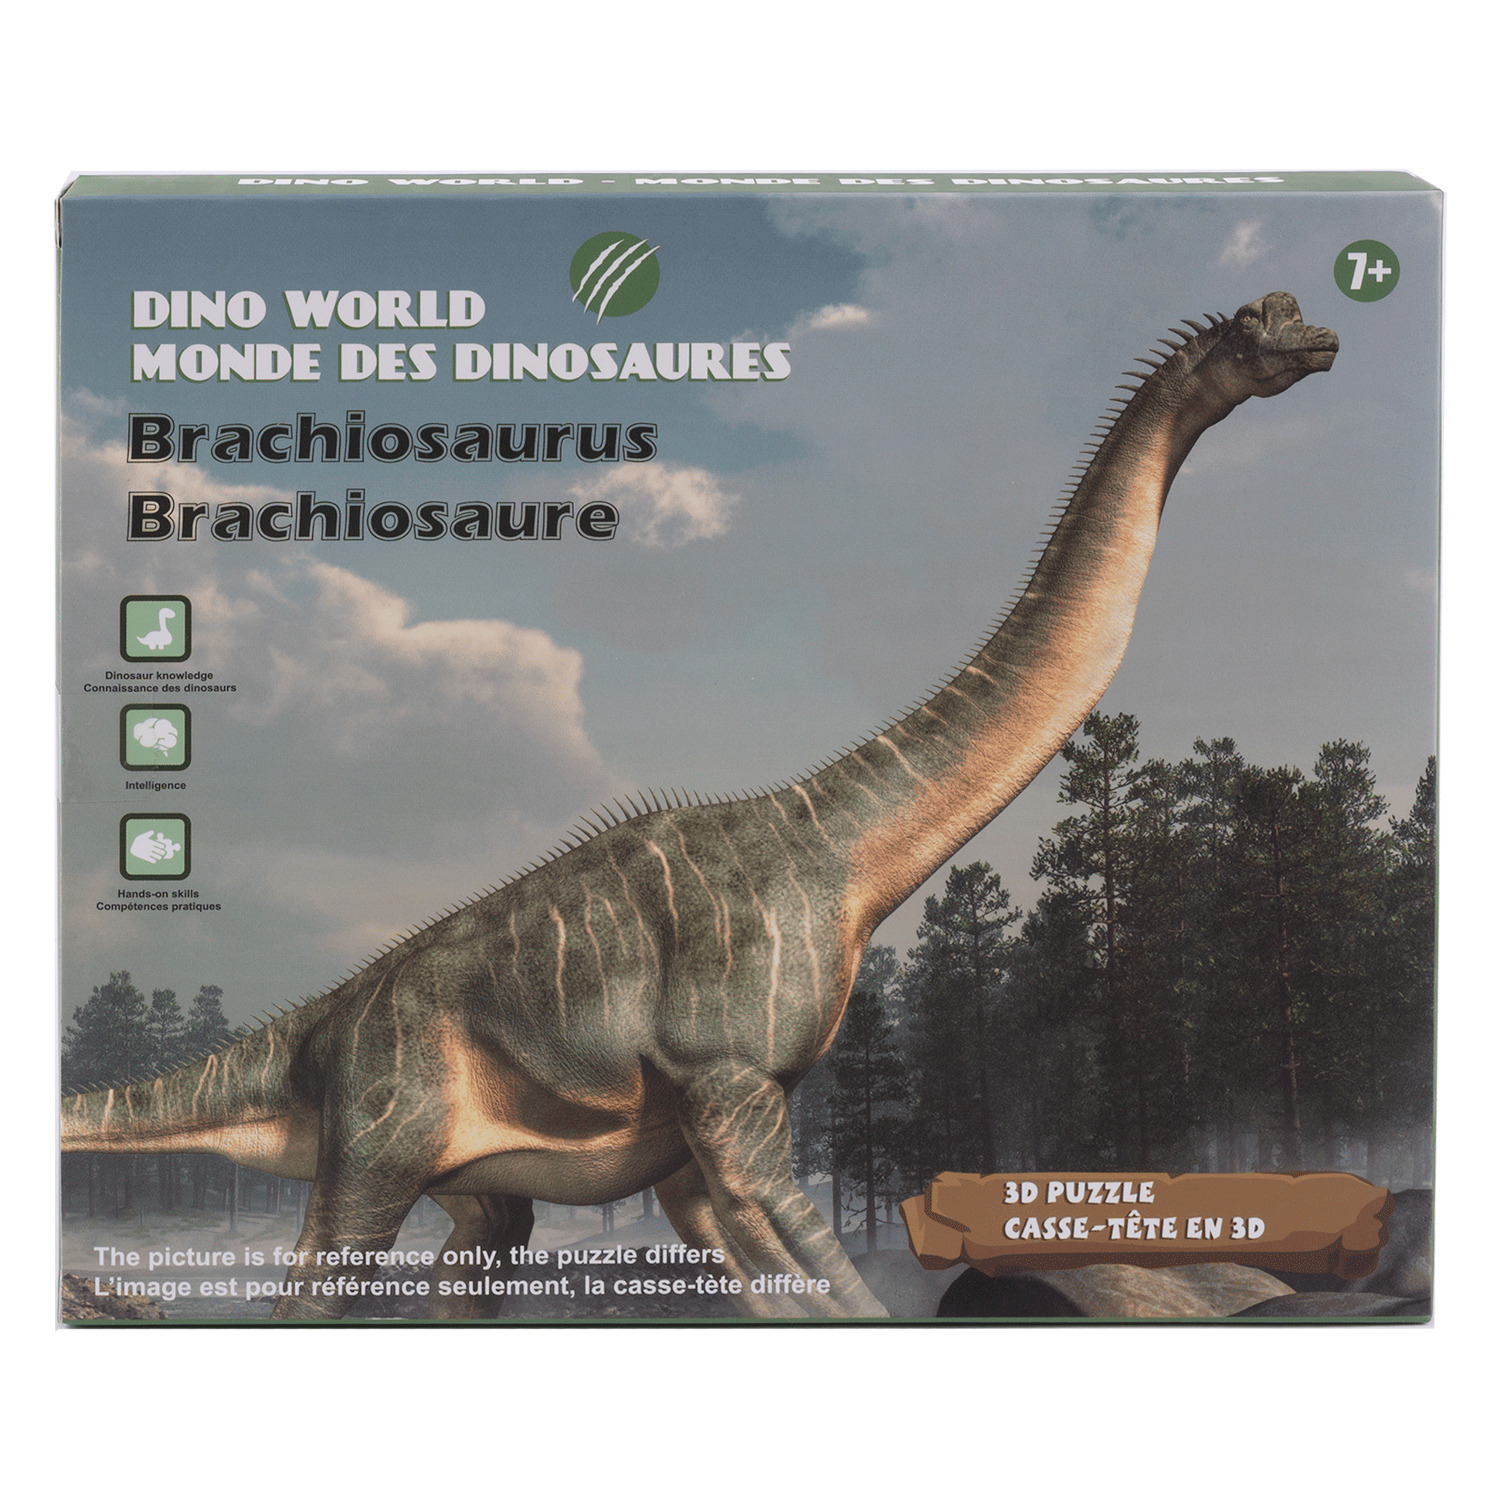 Casse-tête - Monde des dinosaures, casse-tête 3D, Brachiosaure